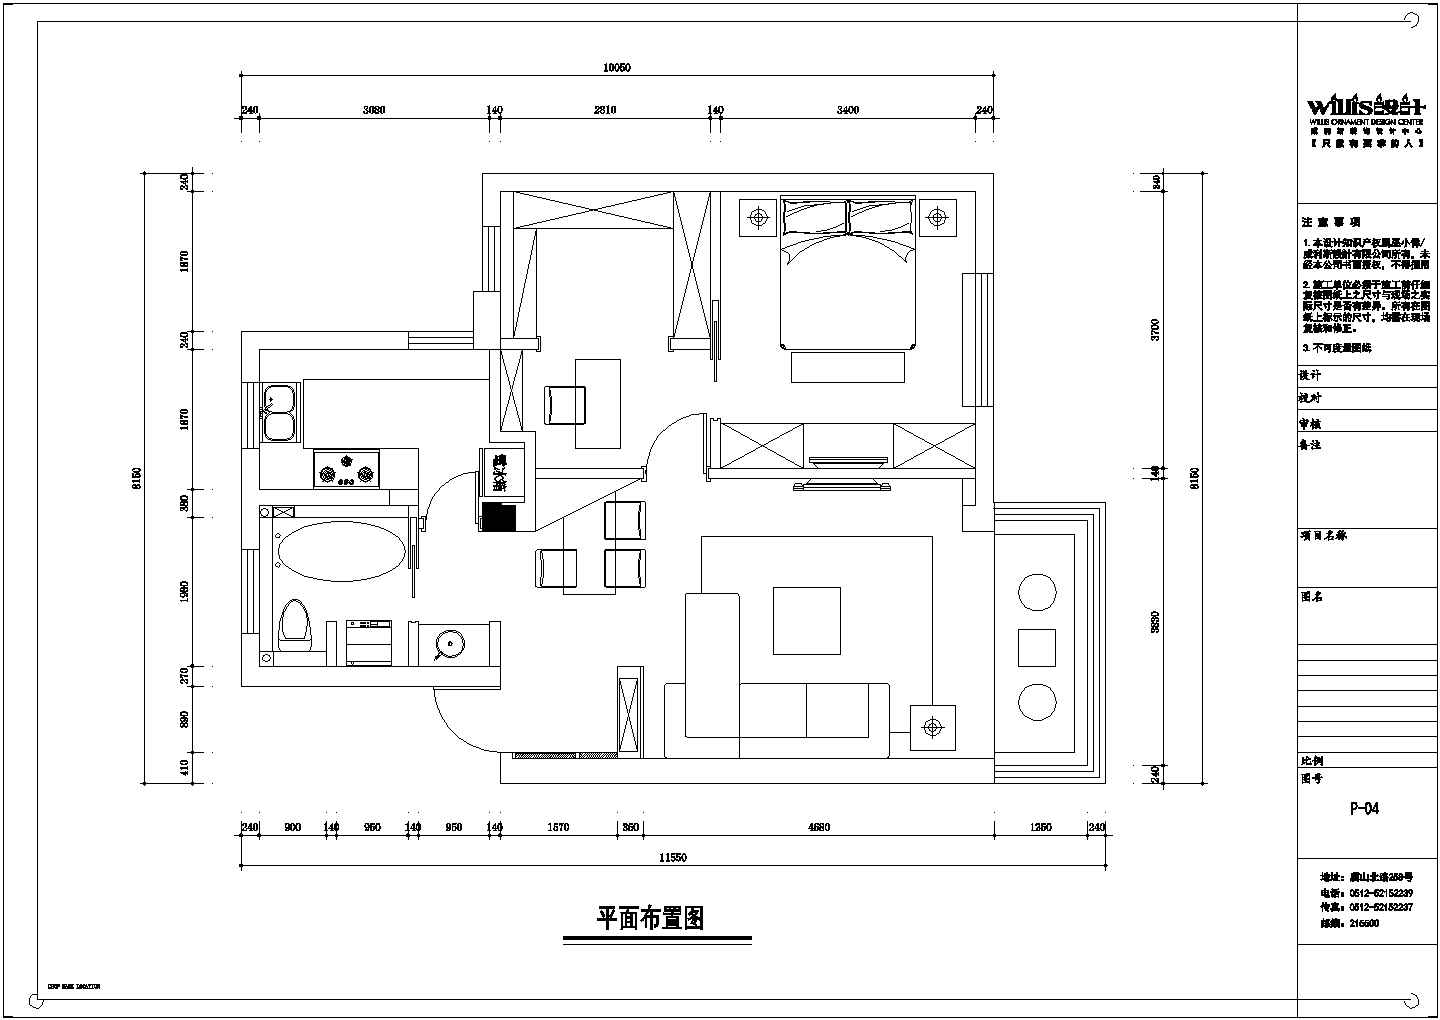 某地两室一厅住宅全套装修设计图纸